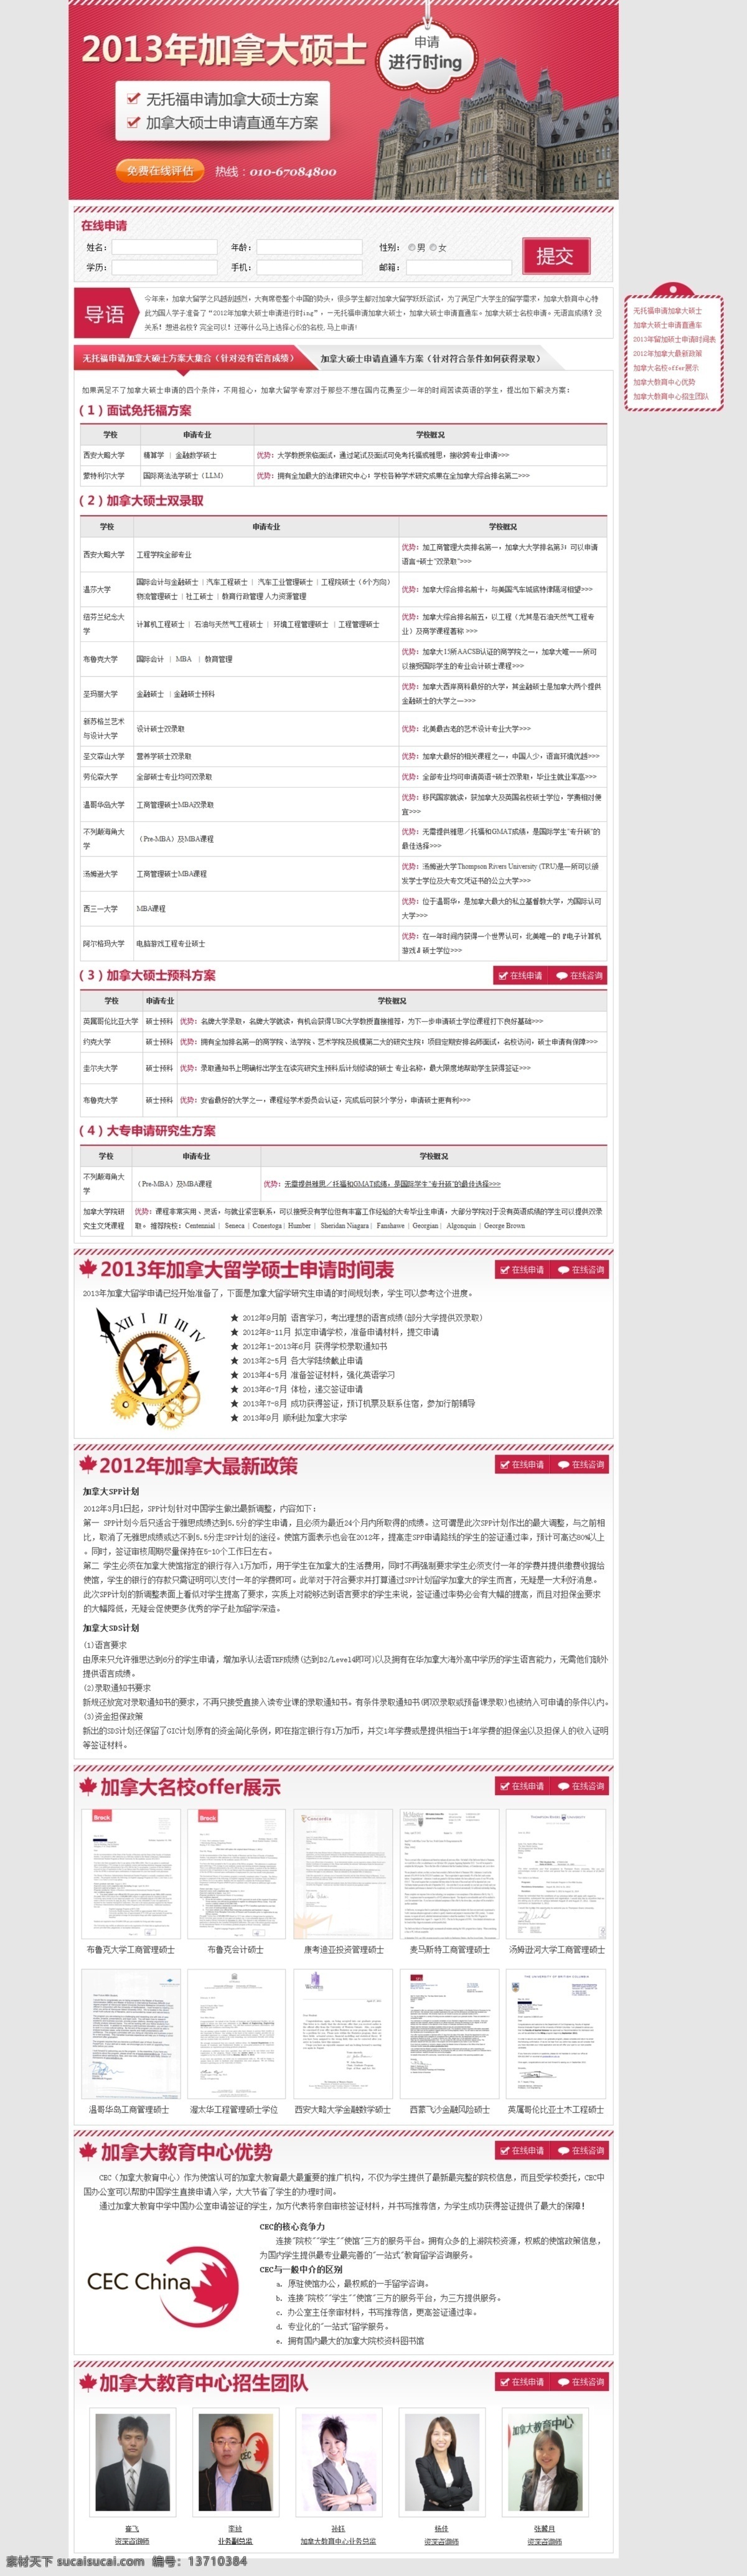 2013 出国 古典学校 红色 加拿大 建筑物 留学 网页模板 硕士 网页 专题 留学专题 中文模版 源文件